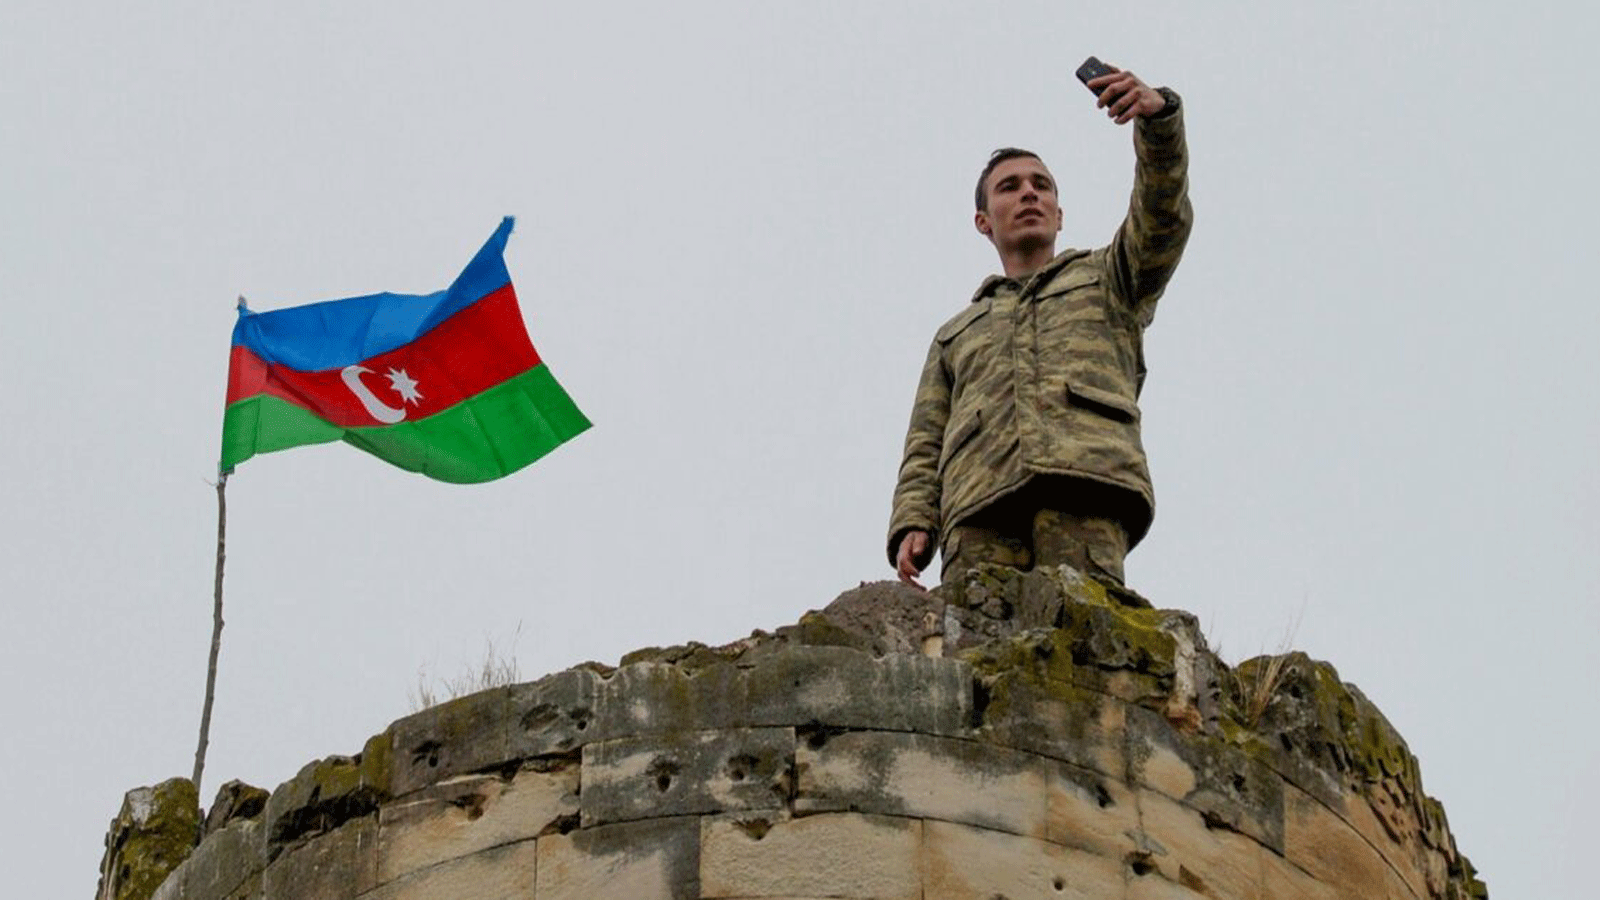 أحد جنود أذربيجان الذين رفعوا علمهم في المنطقة الأخيرة التي تخلت عنها أرمينيا بموجب اتفاق سلام أنهى القتال على منطقة ناغورنو كاراباخ